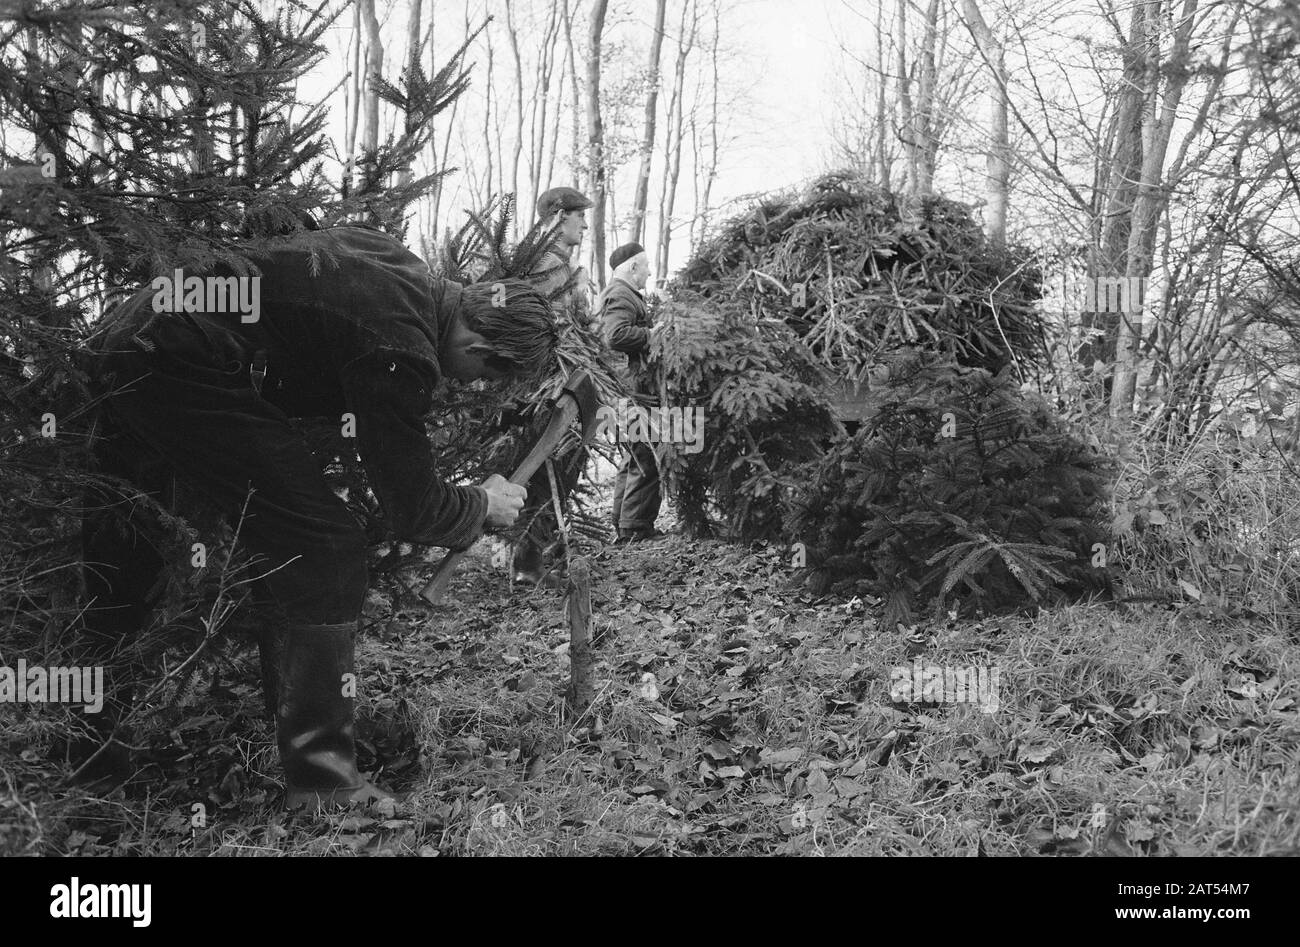 Weihnachtsbaum auf dem Anwesen Pijnenburg gefällt. Männer, die Bäume Fällen Datum: 11. Dezember 1961 Stichwörter: Männer, Weihnachtsbäume, Anwesen Stockfoto